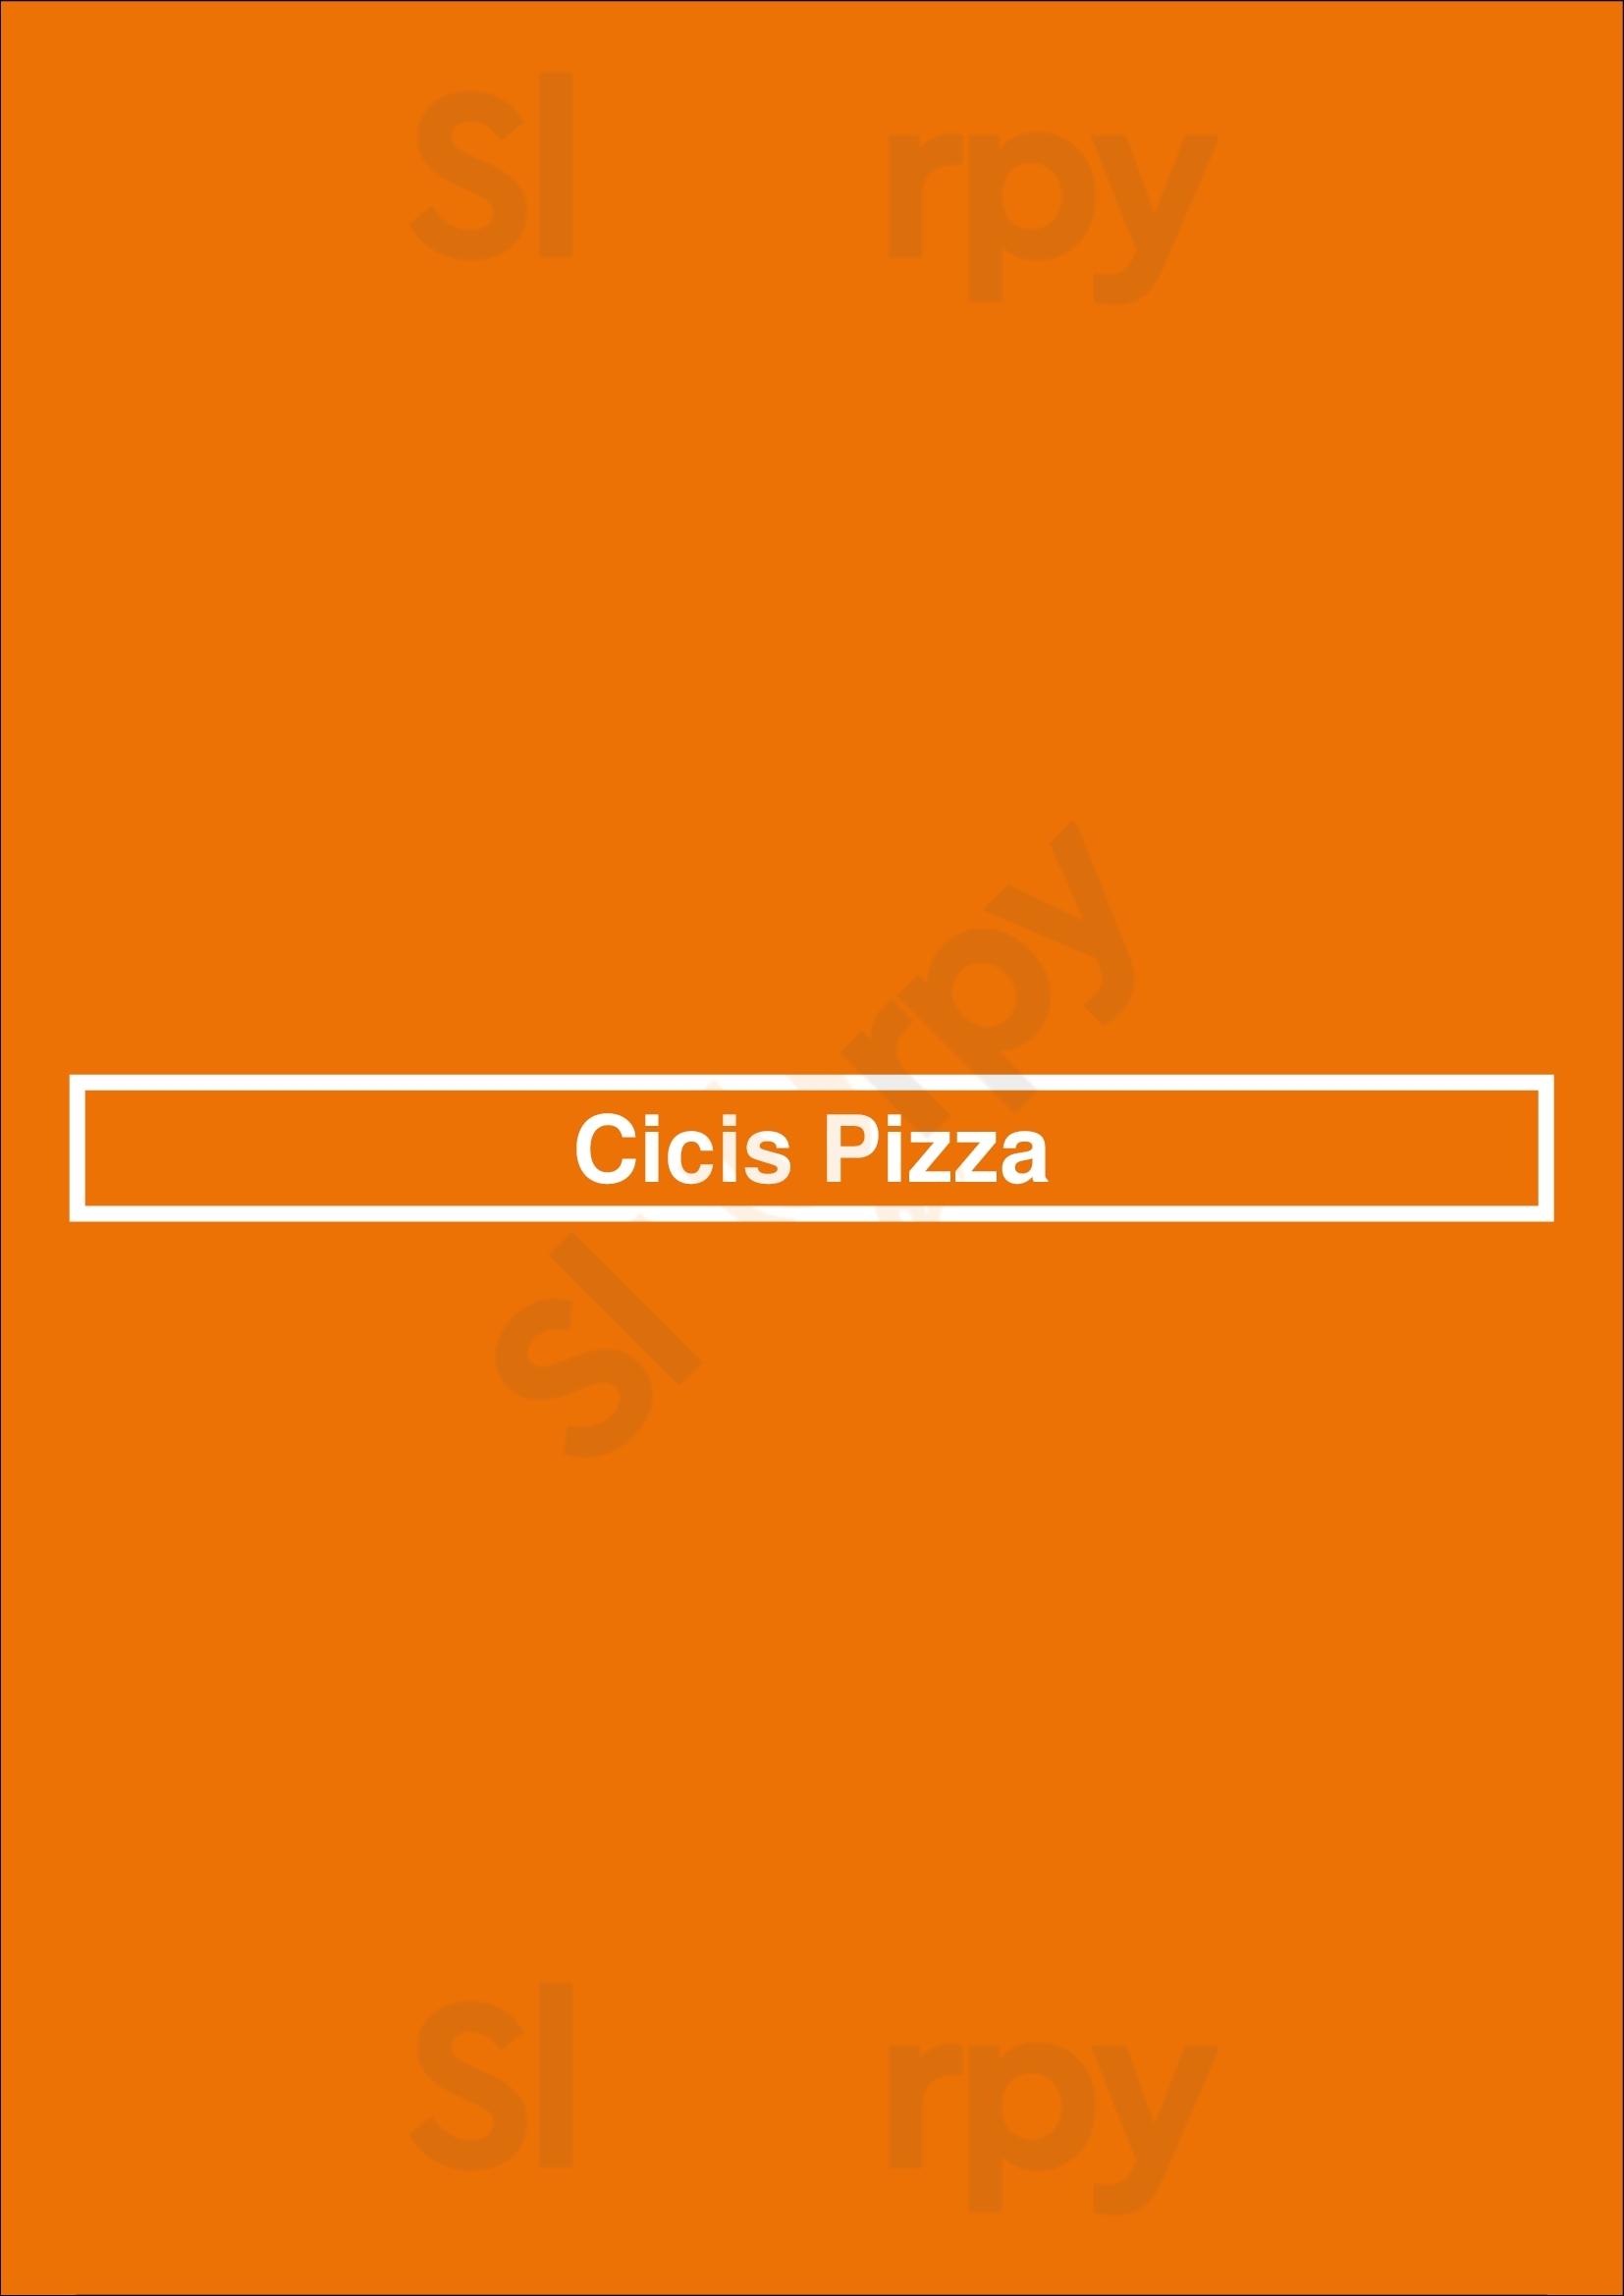 Cicis Pizza Westminster Menu - 1